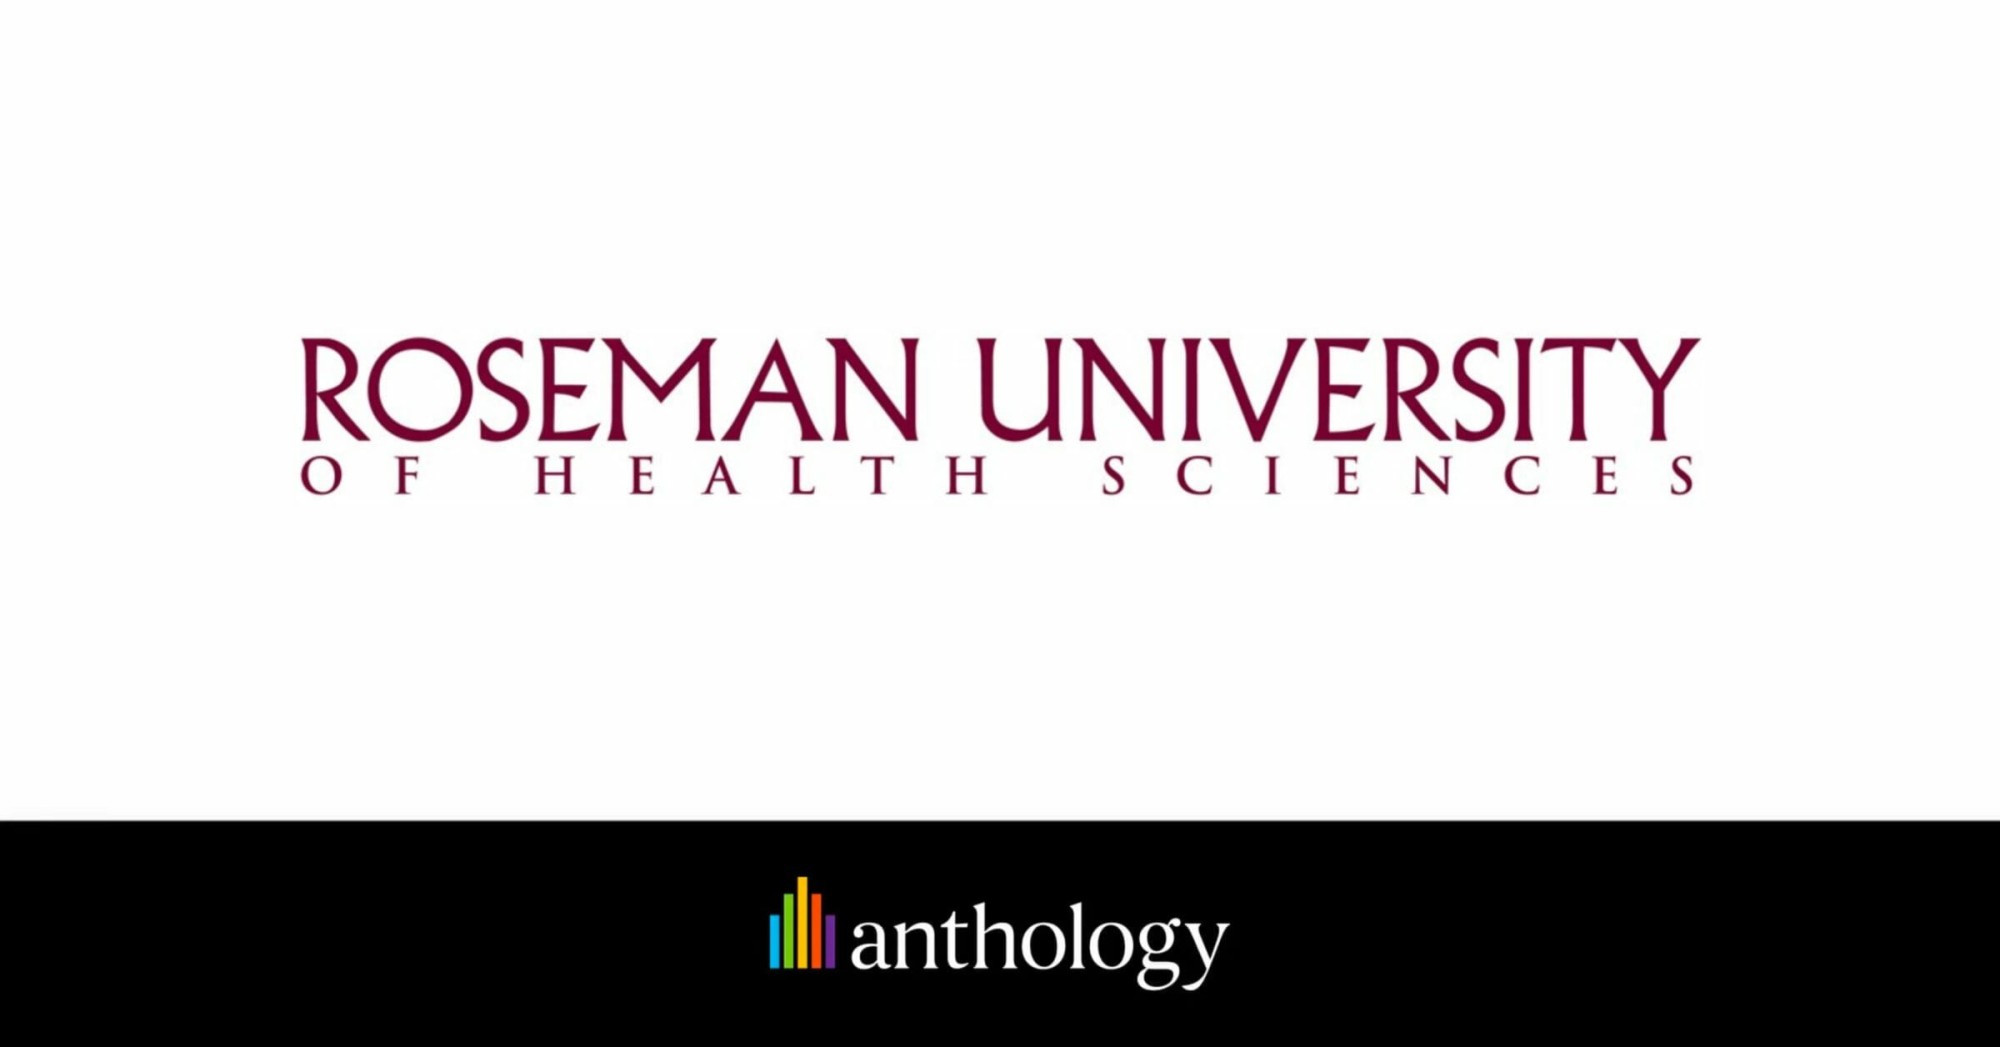 Roseman University of Health Sciences logo lockup with the Anthology logo